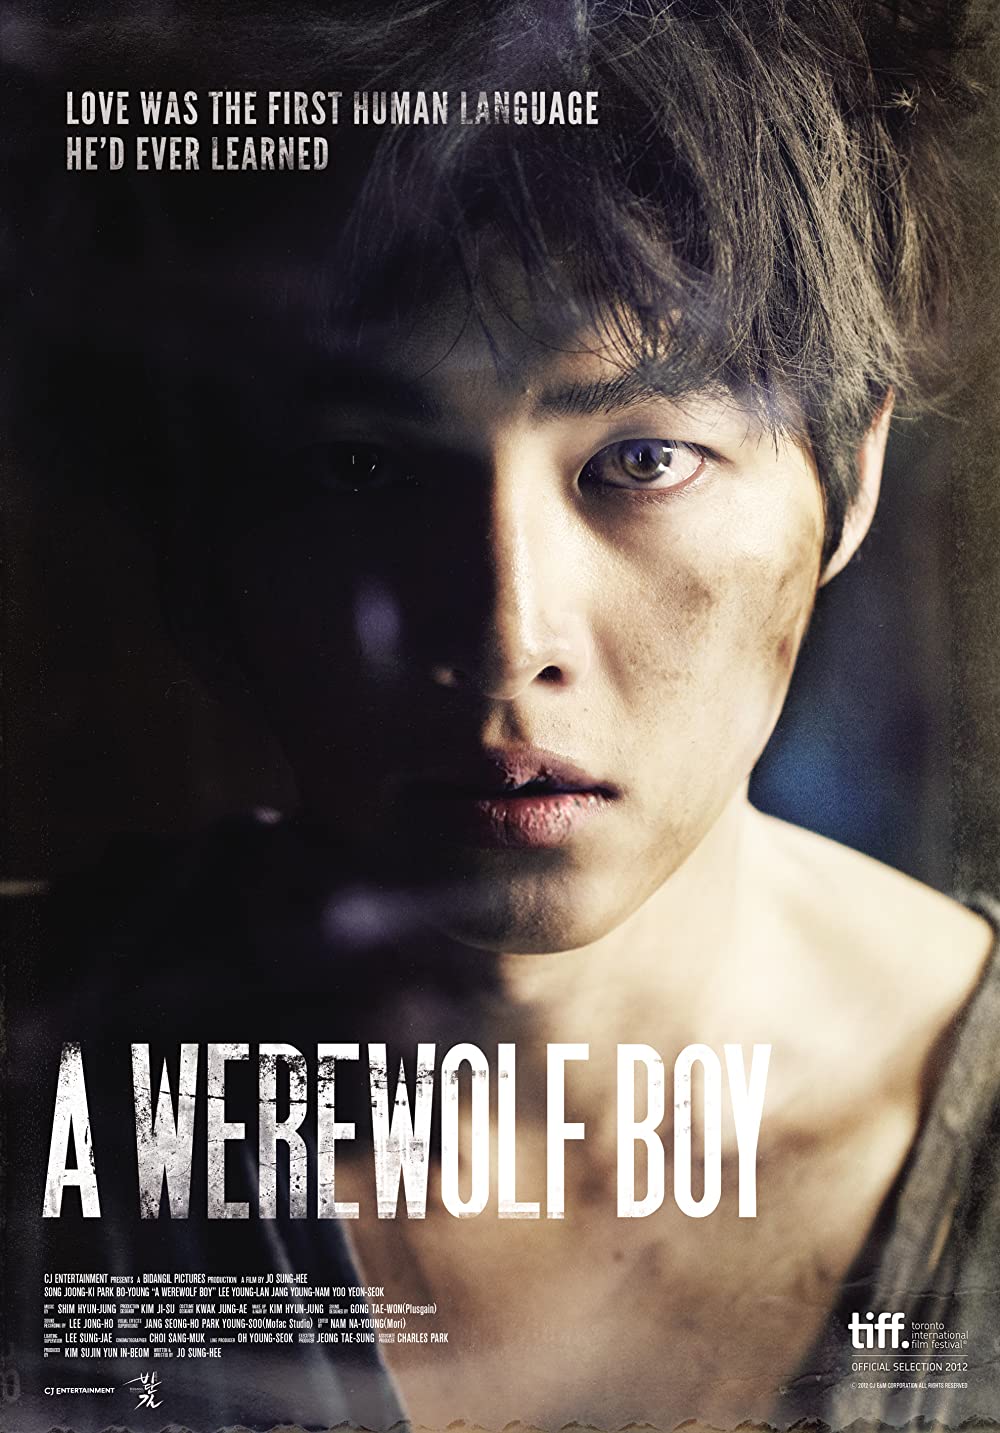 11 Film Korea terbaik sepanjang masa di Asianwiki, Haeundae menyentuh